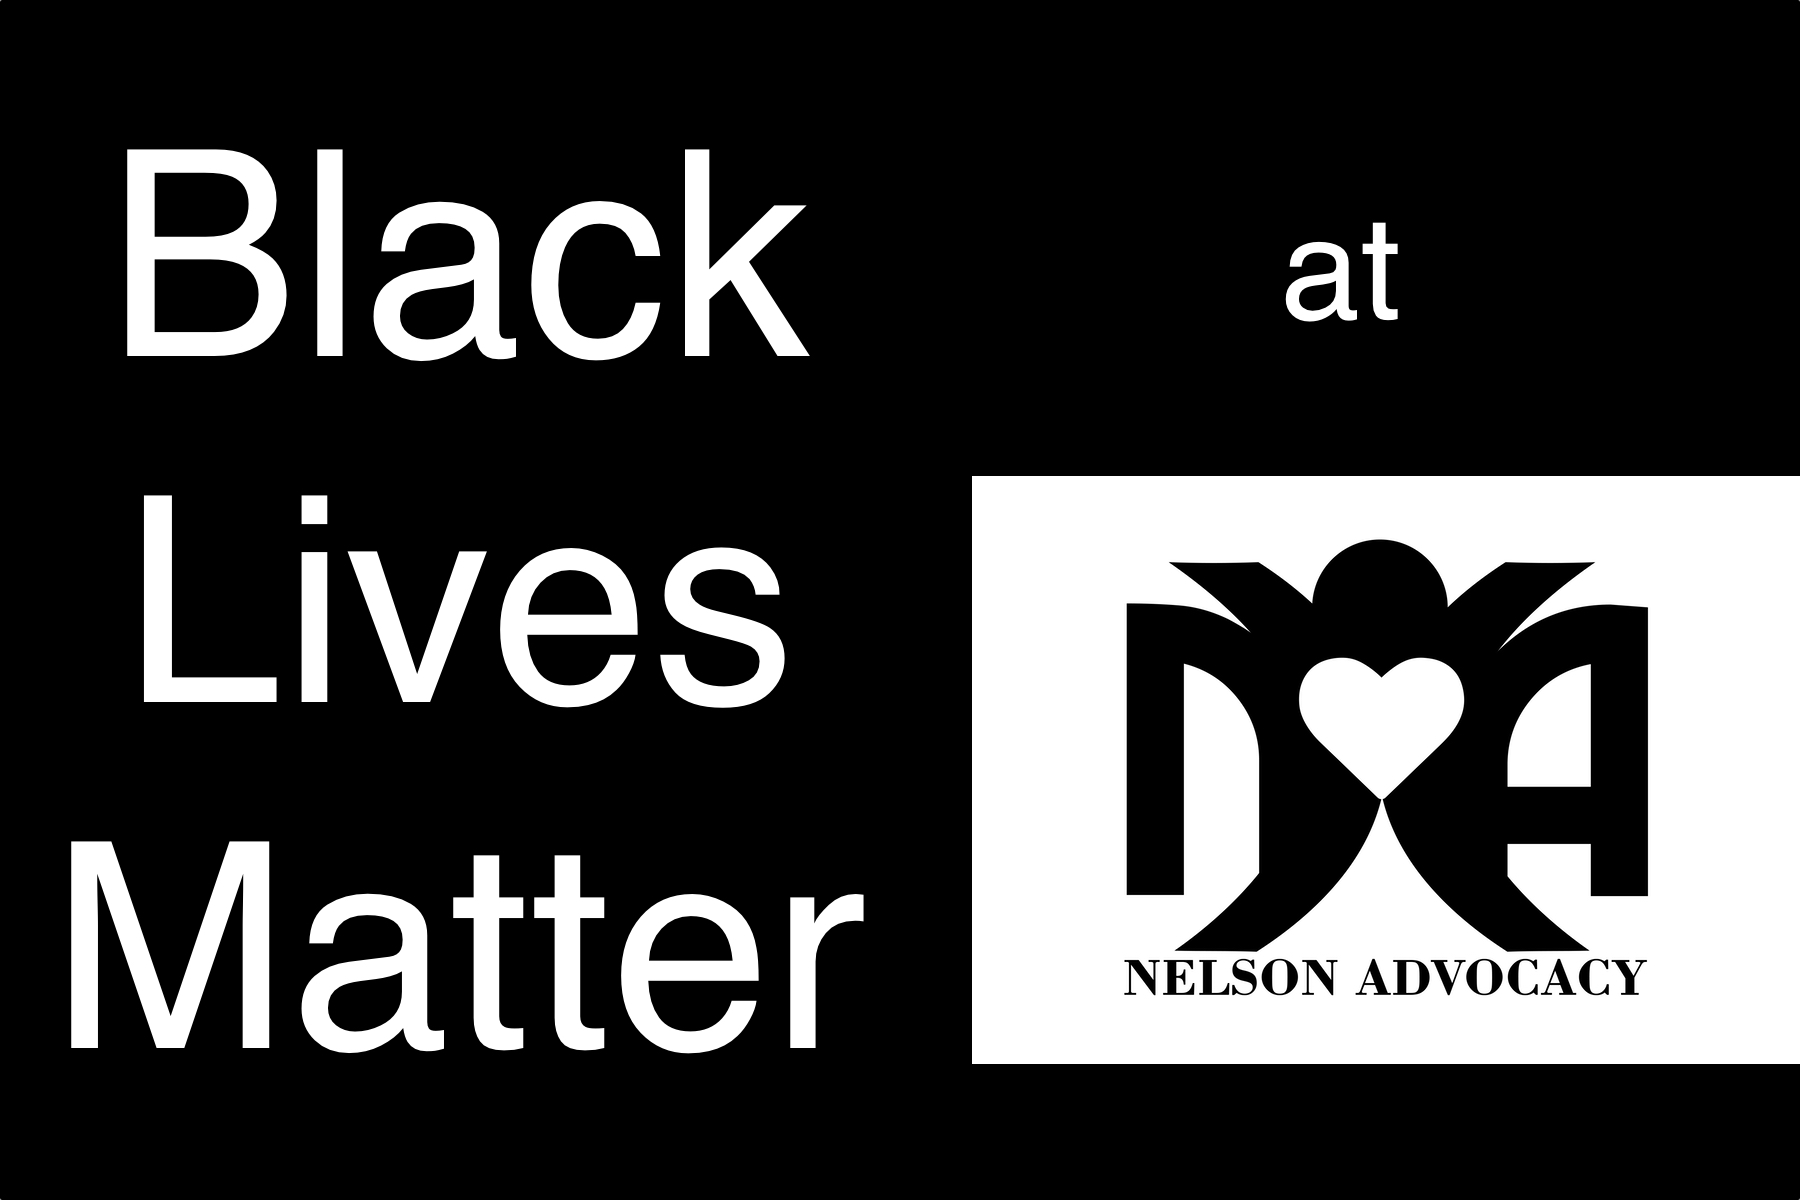 BlackLivesMatteratNelsonAdvocacy